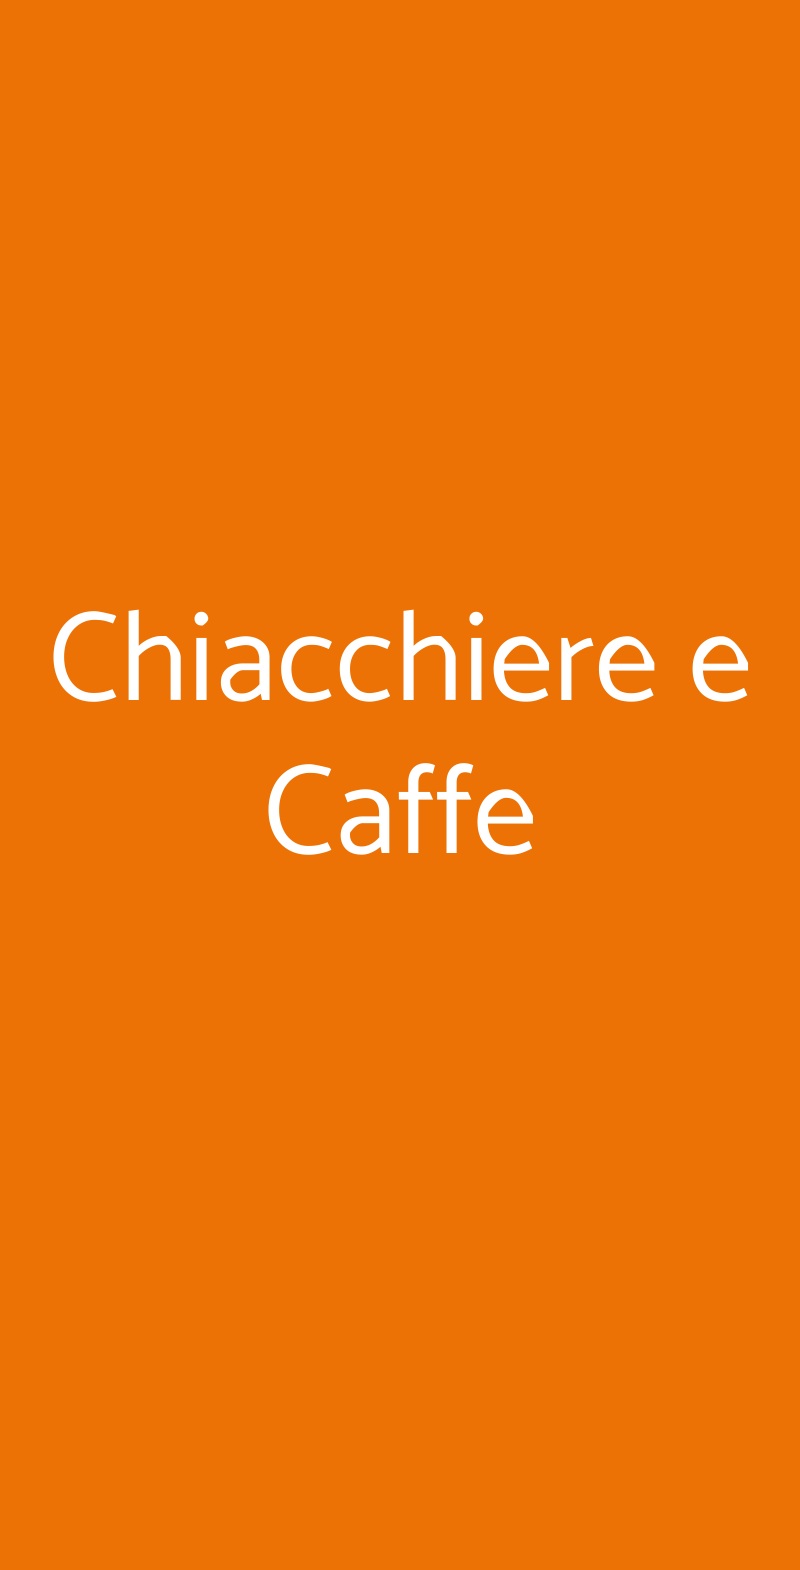 Chiacchiere e Caffe Roma menù 1 pagina